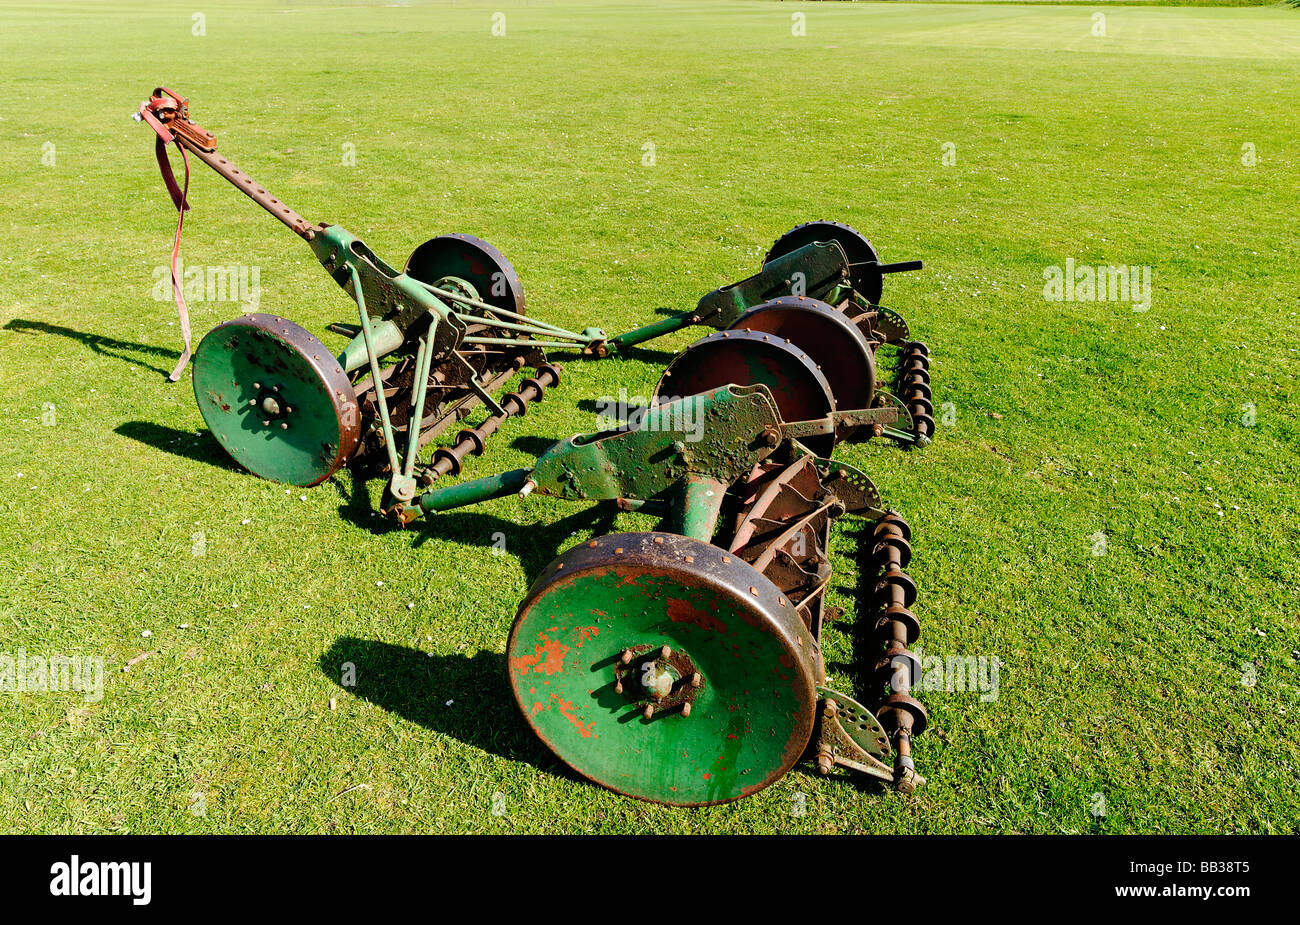 Lawnmower on sports field Stock Photo